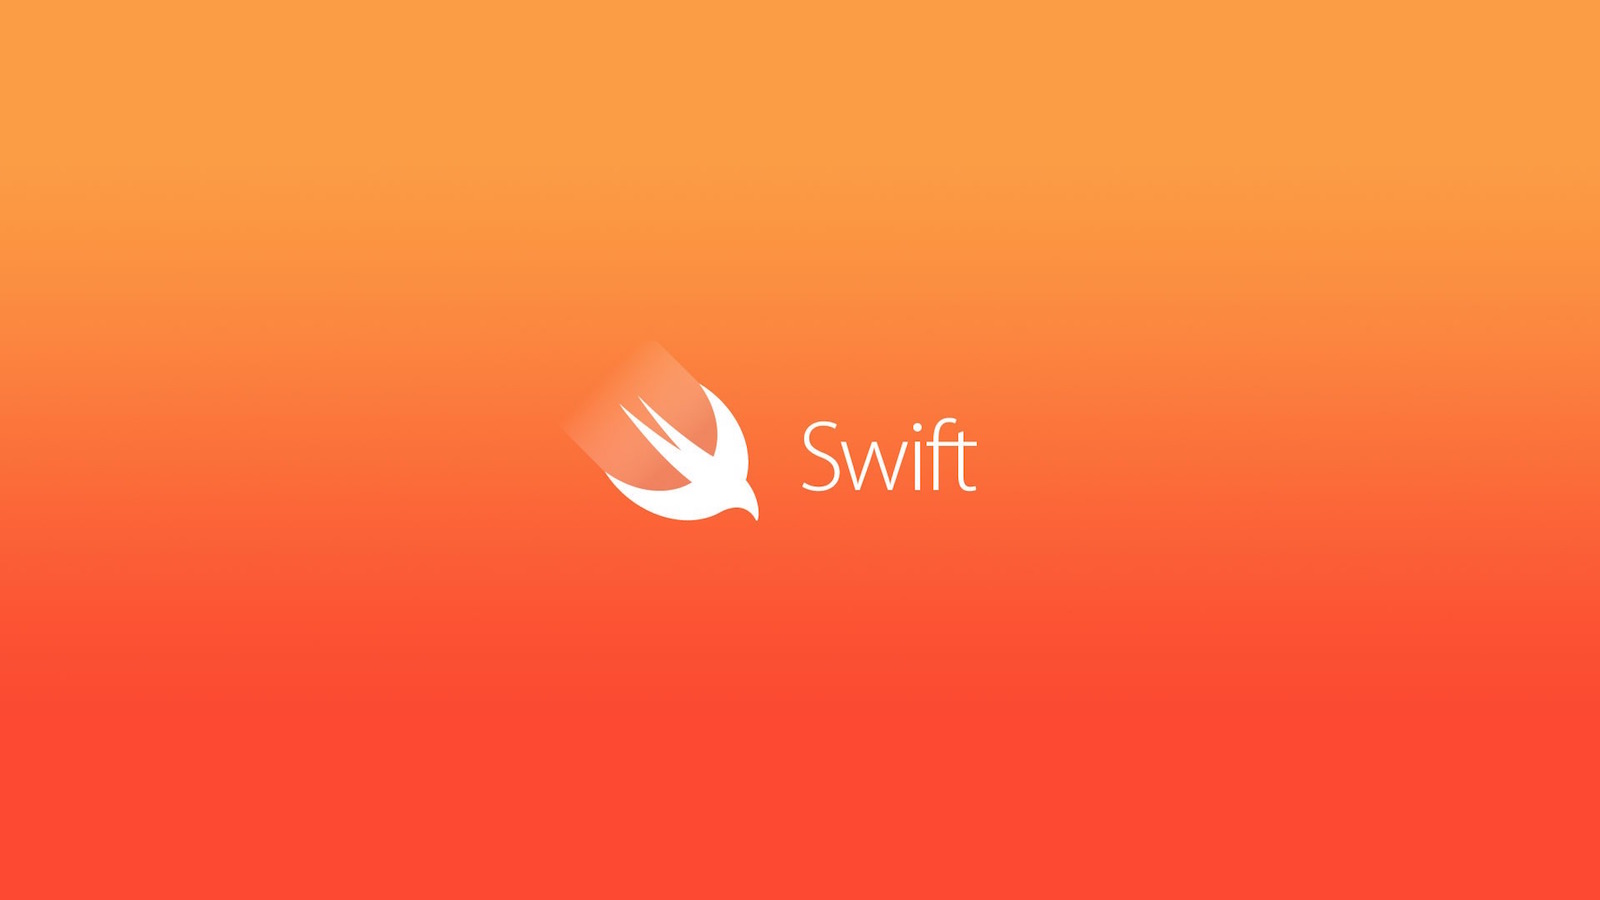 Swift стал языком программирования с открытым исходным кодом